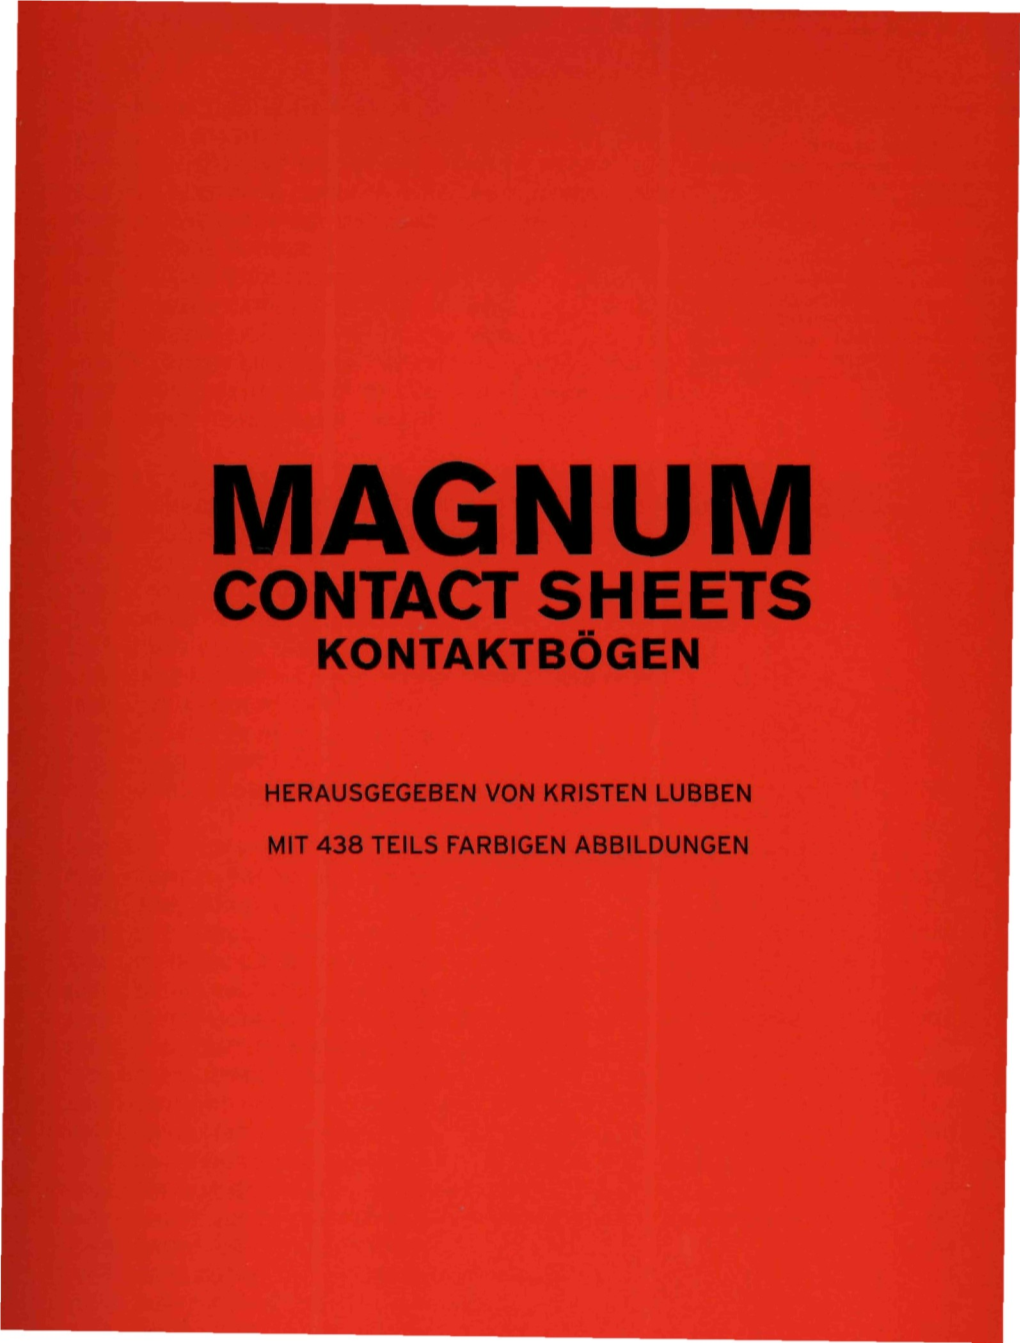 Contact Sheets Kontaktbögen